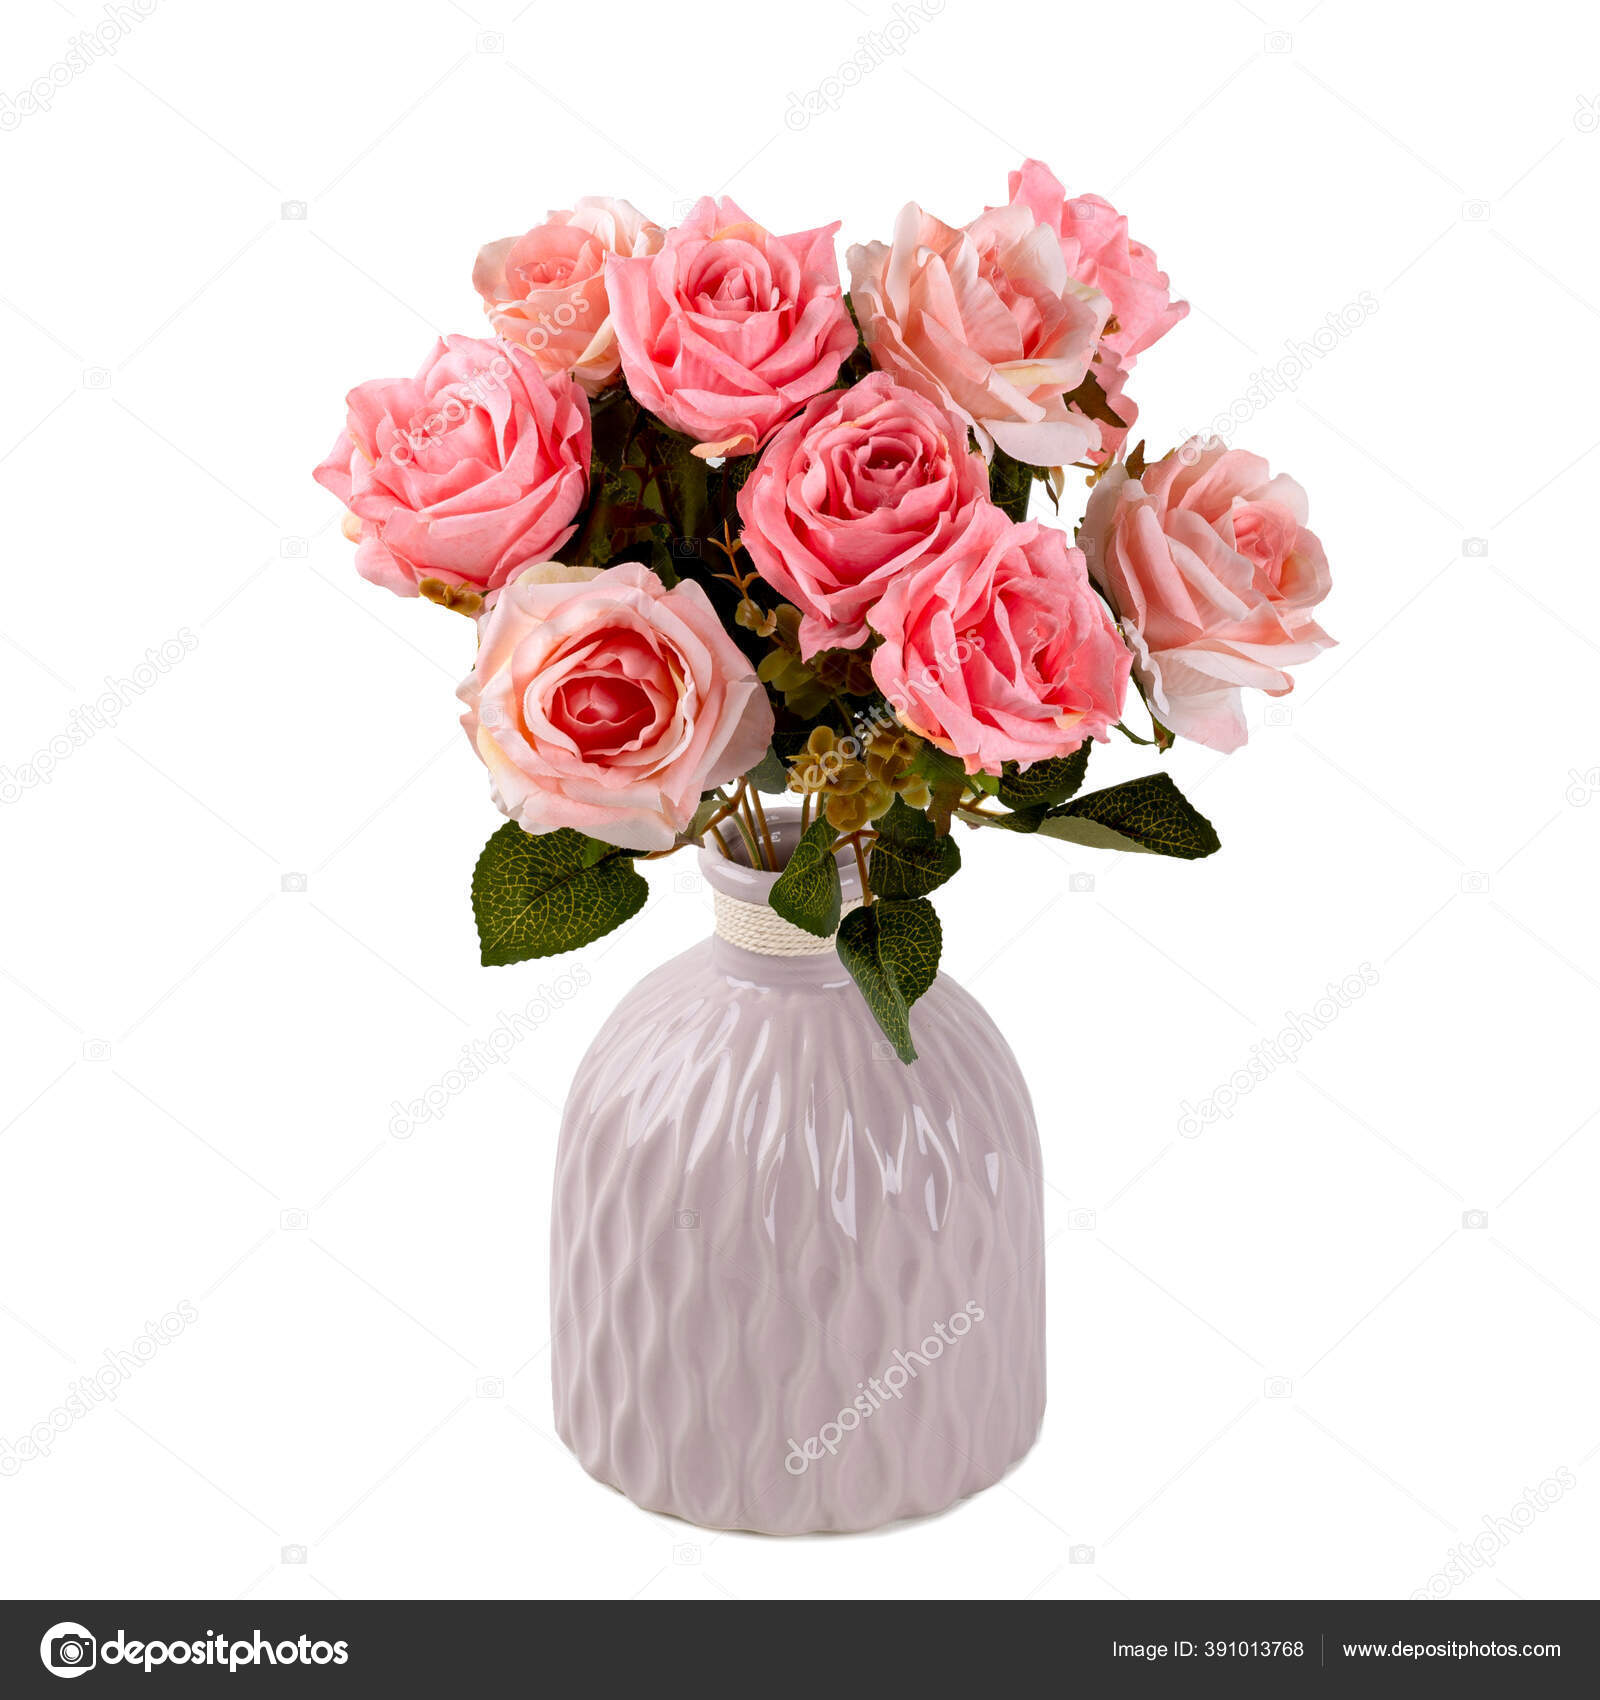 Bunga Mawar Buatan Seperti Nyata Dalam Vas Bergaya Sebagai Dekorasi Stok Foto C Roverus 391013768